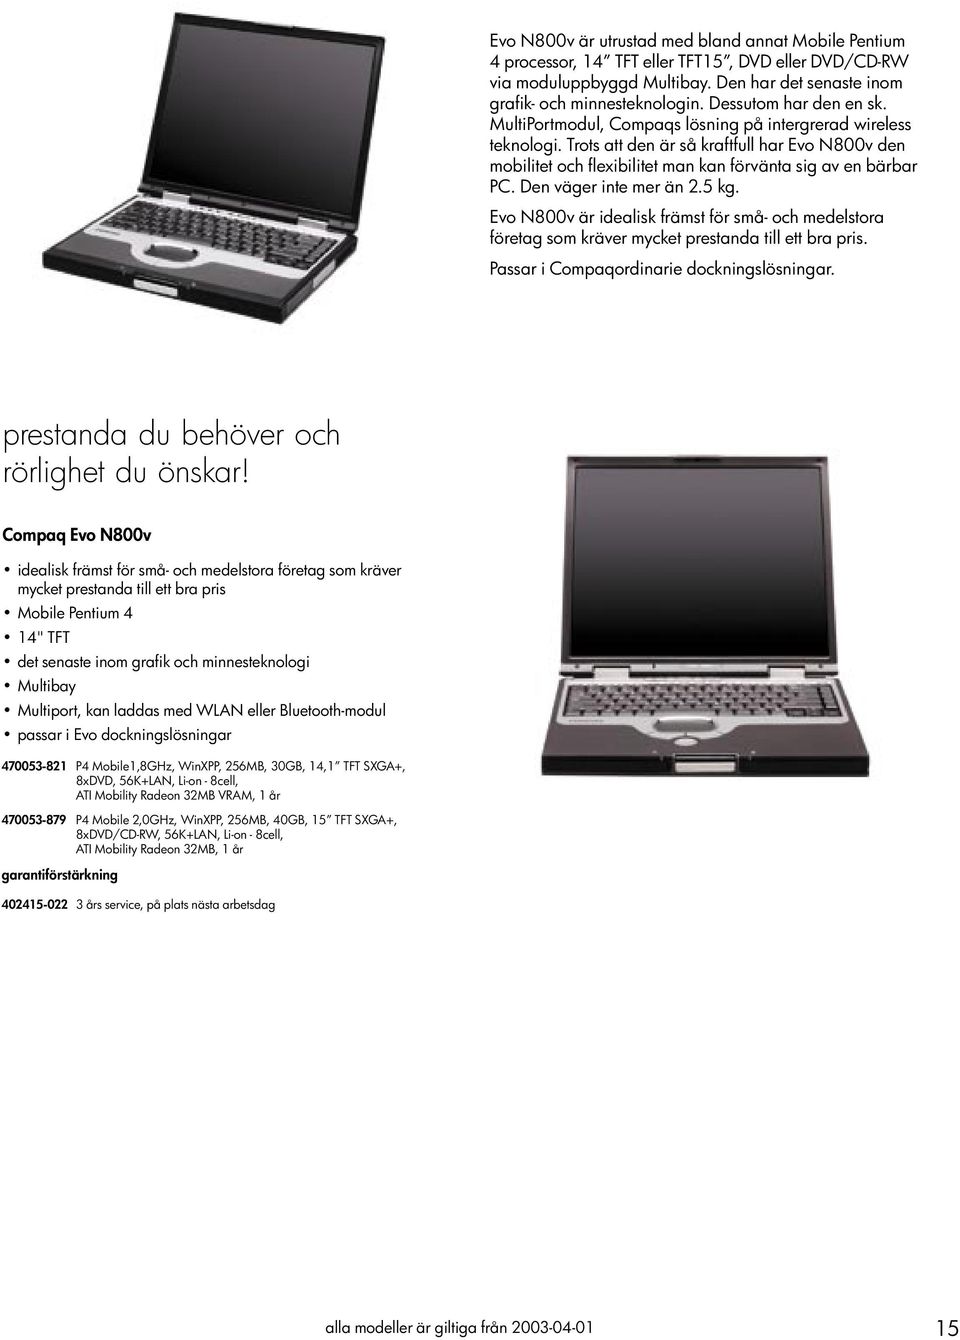 Trots att den är så kraftfull har Evo N800v den mobilitet och flexibilitet man kan förvänta sig av en bärbar PC. Den väger inte mer än 2.5 kg.